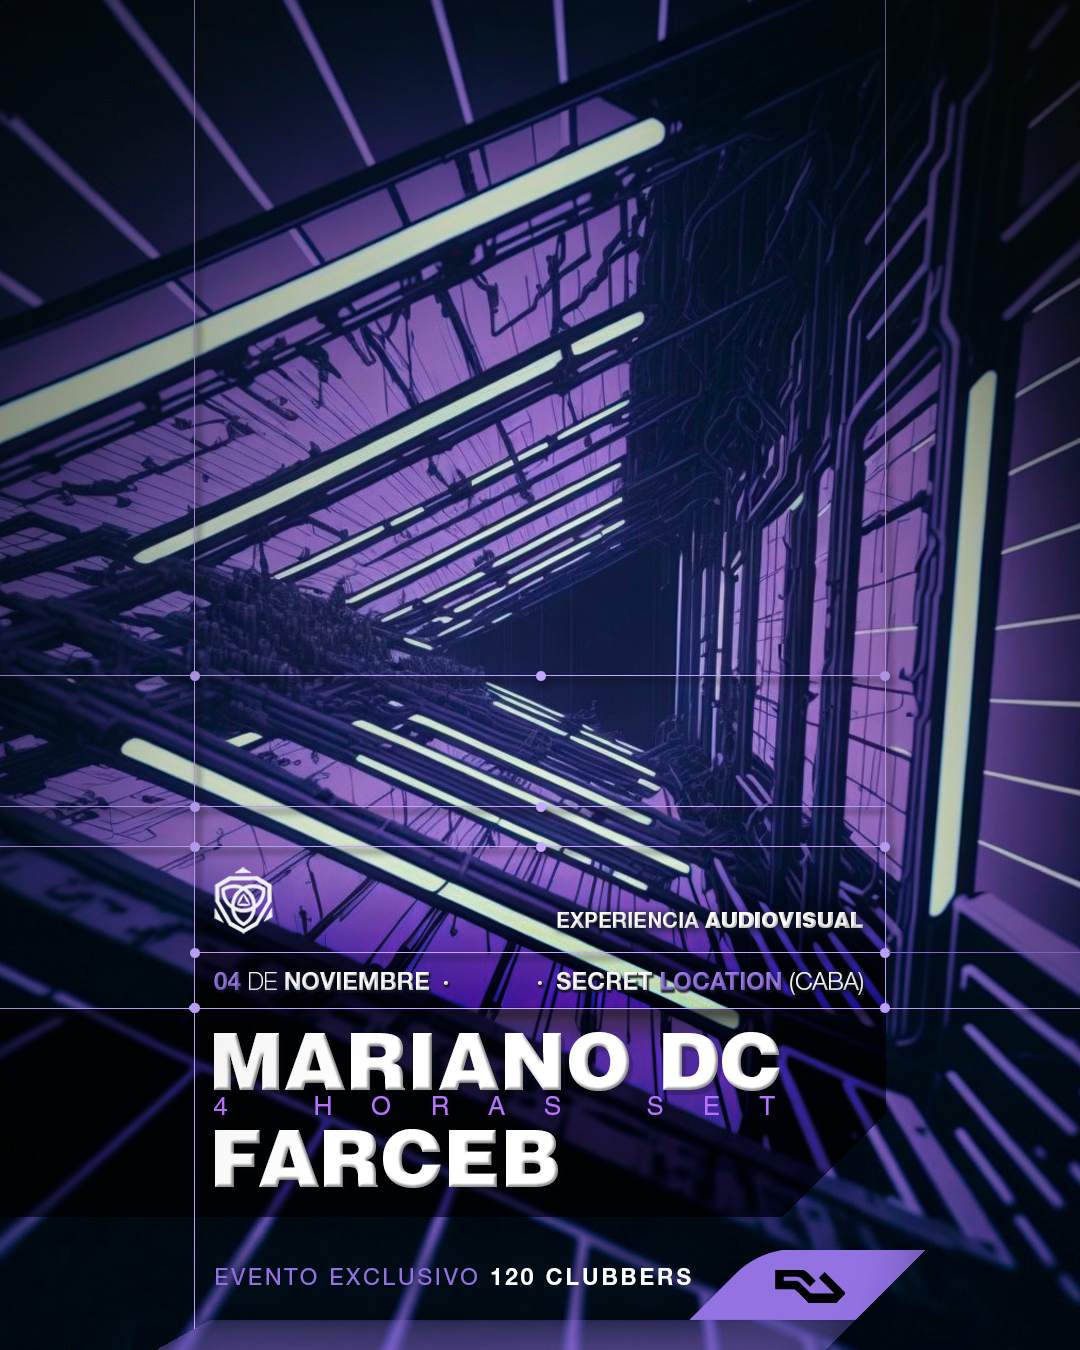 Culto pres. Mariano DC & Farceb at Secret Location - フライヤー表